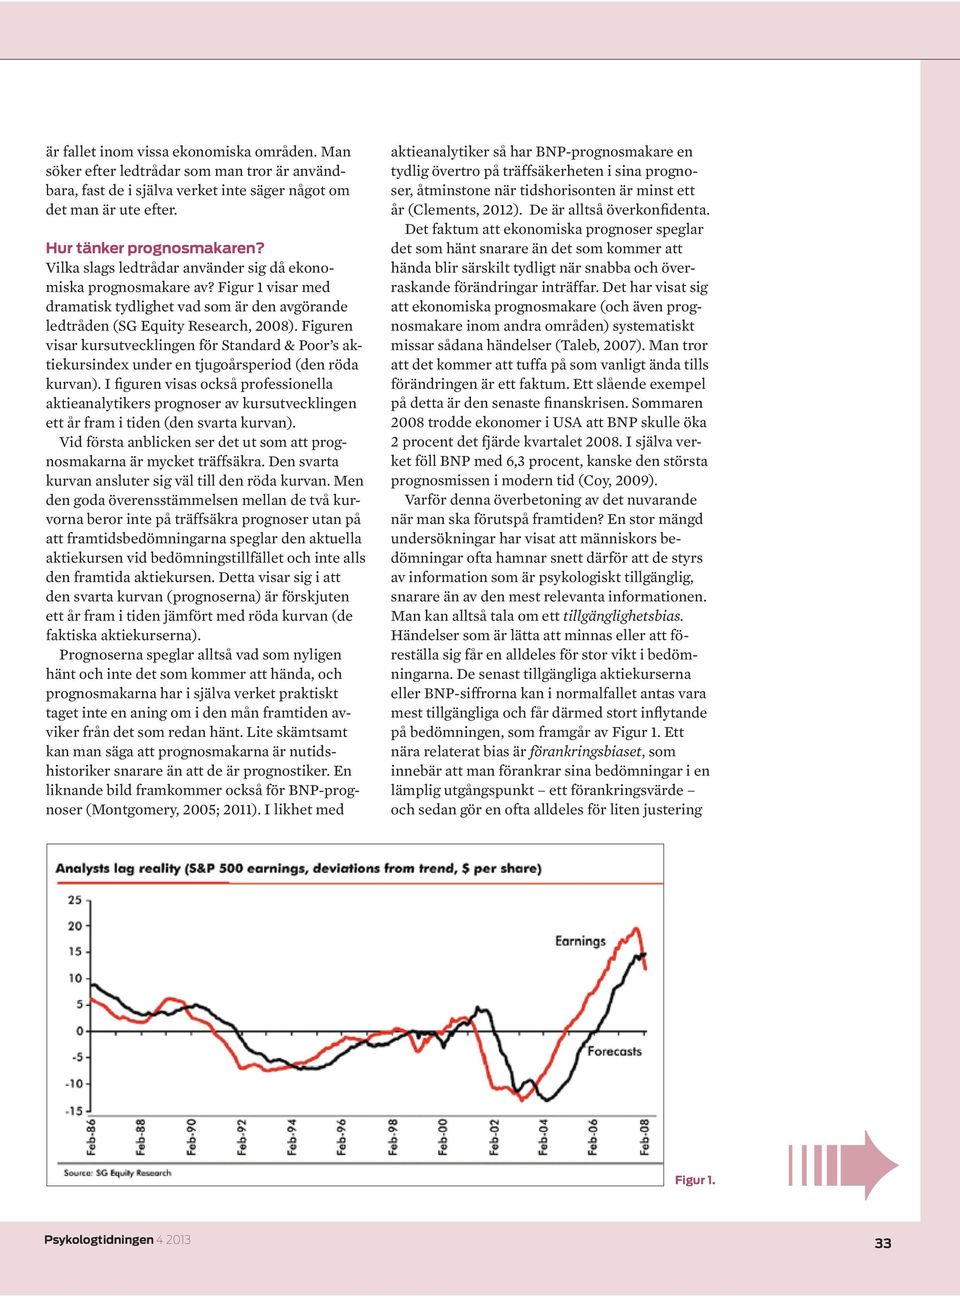 Figuren visar kursutvecklingen för Standard & Poor s aktiekursindex under en tjugoårsperiod (den röda kurvan).